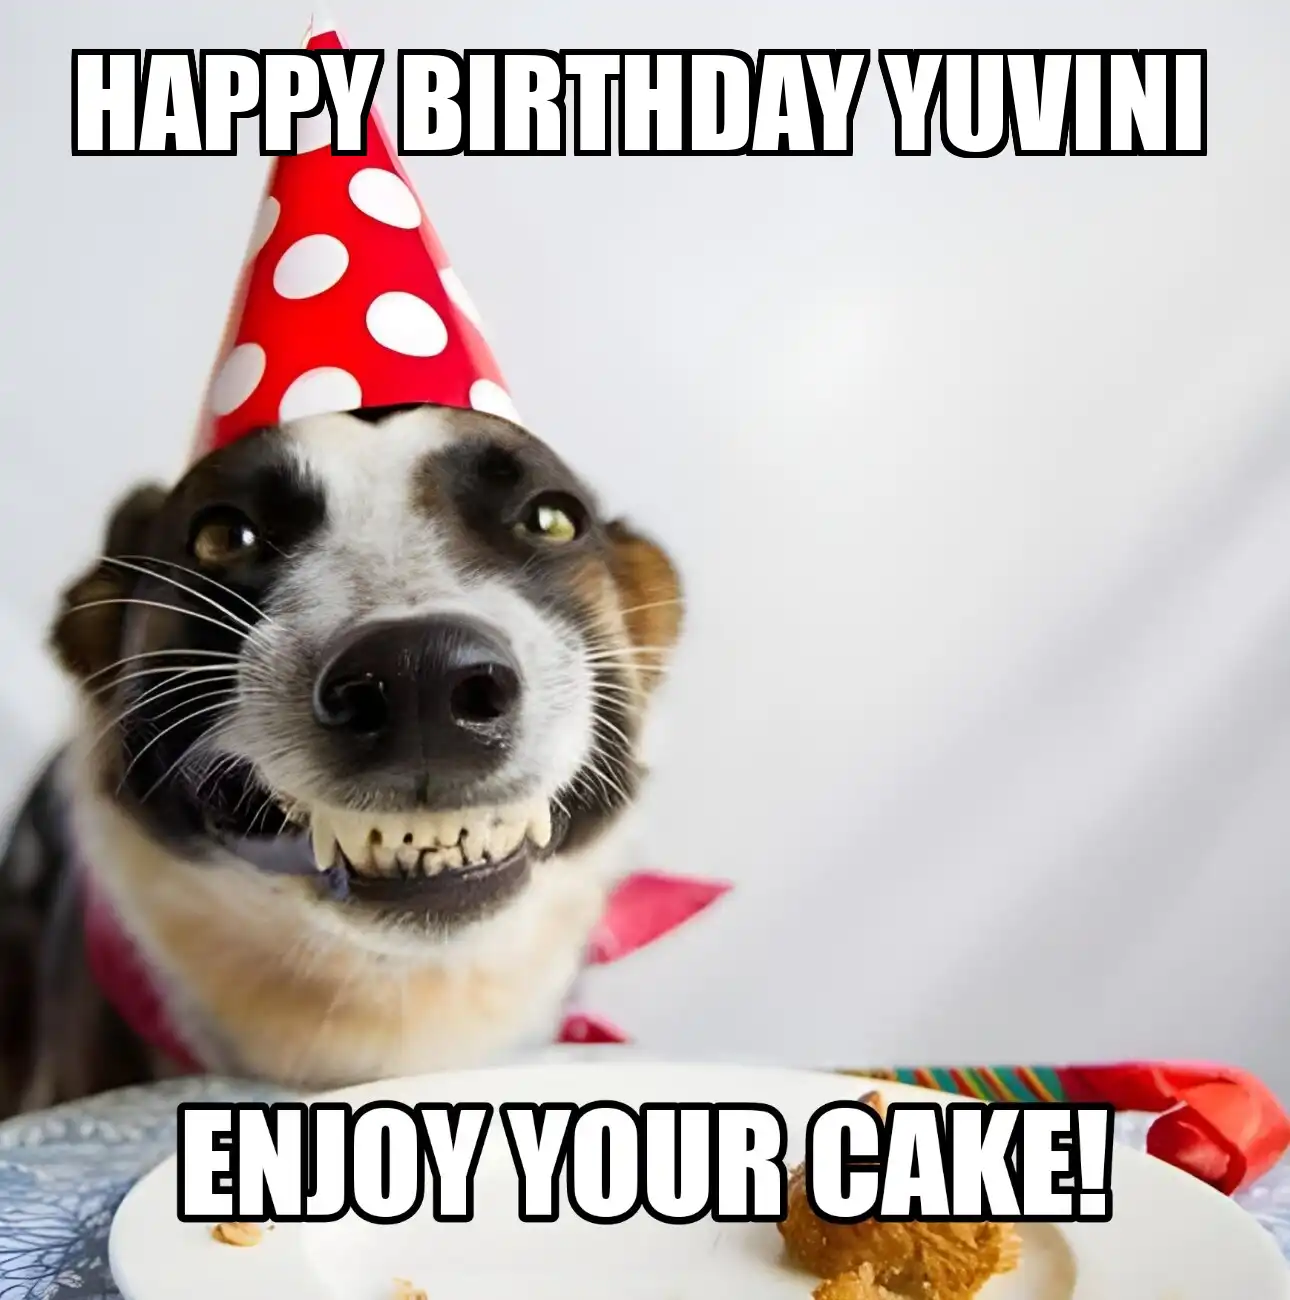 Happy Birthday Yuvini Enjoy Your Cake Dog Meme